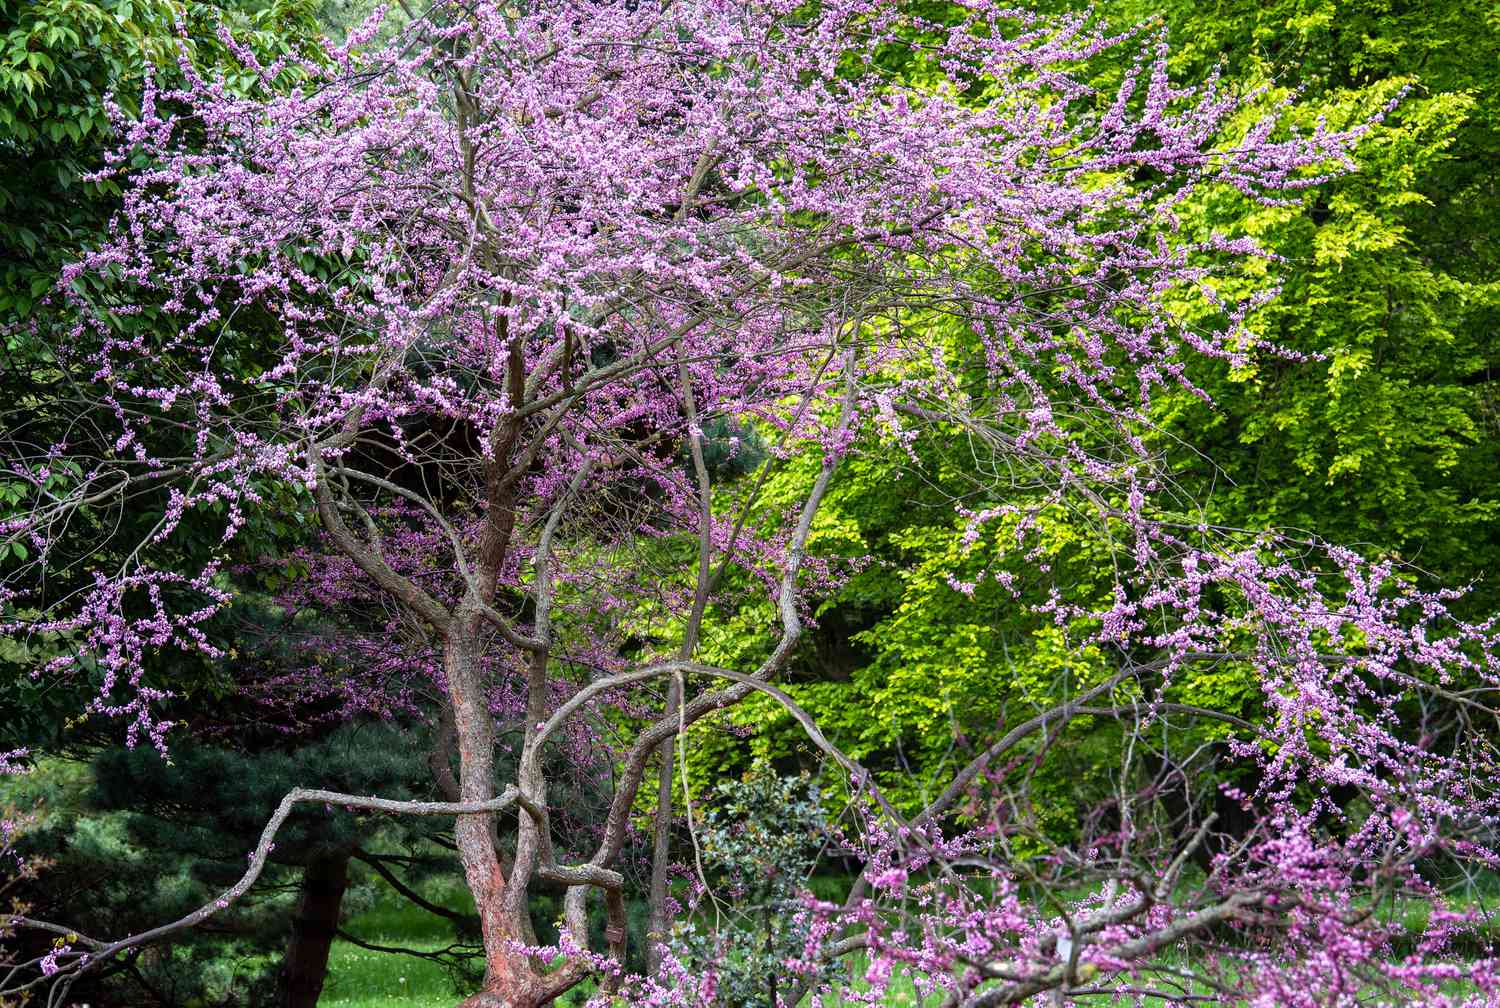 Trauernder Rotbudbaum mit geschwungenen Ästen und lila-rosa Blüten